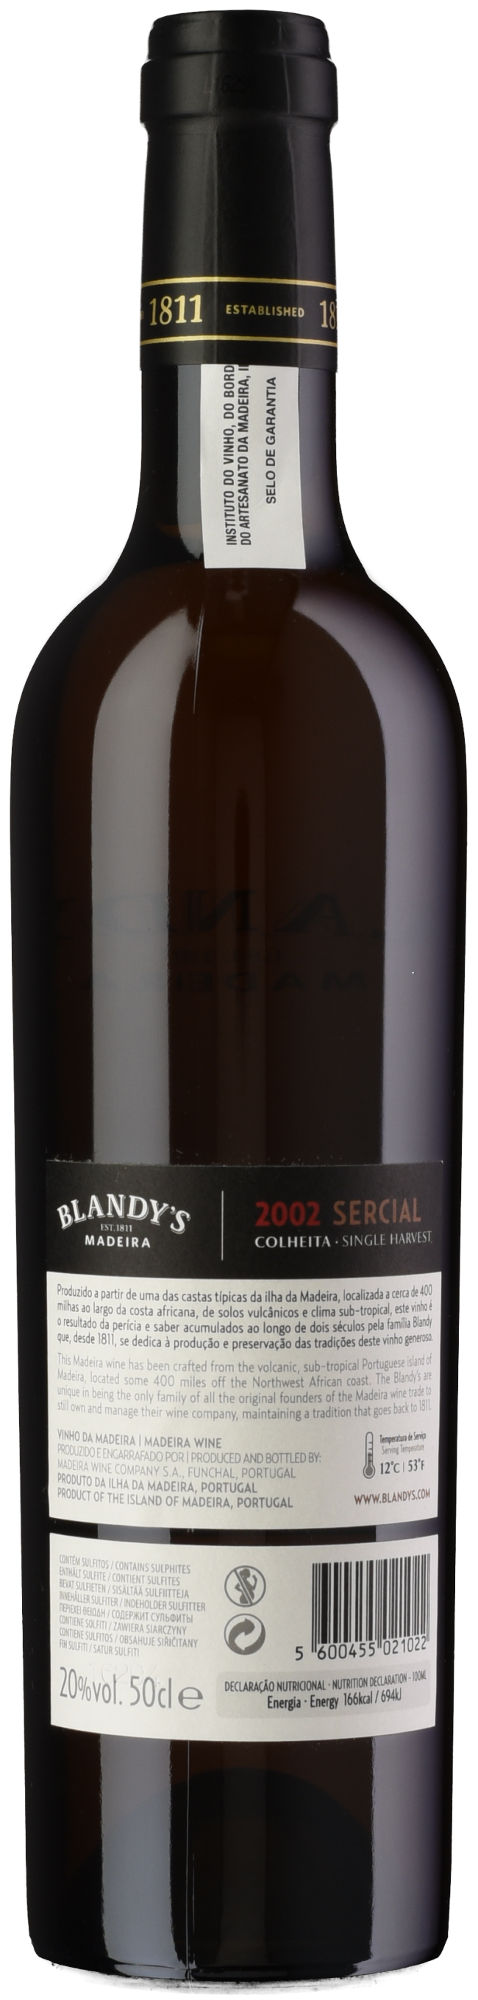 Blandy-Sercial-Colheita-2002-Madeira-back